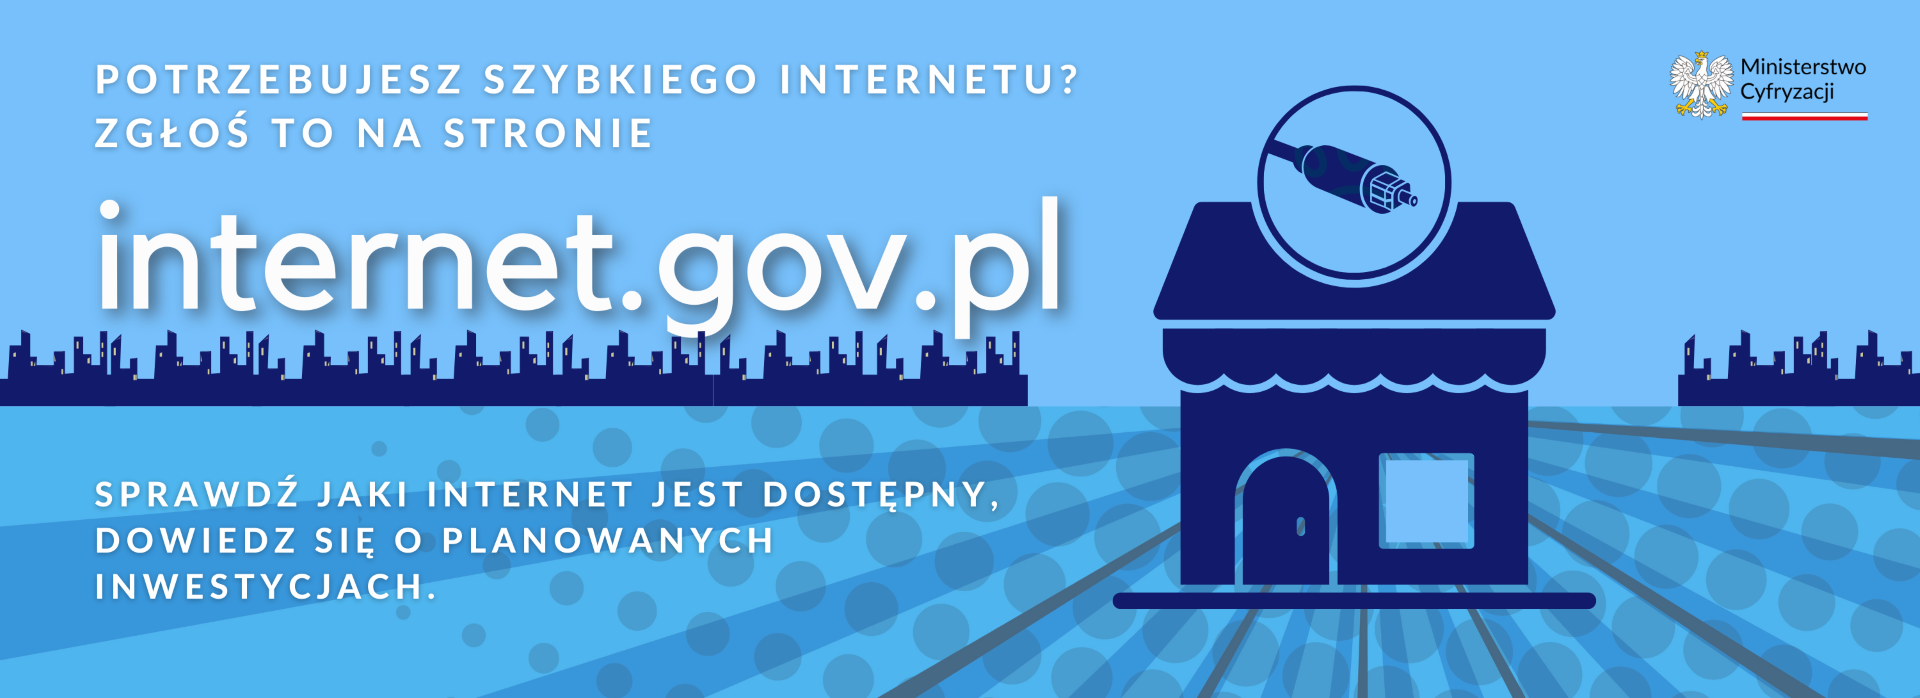 Portal INTERNET.GOV.PL dostępny